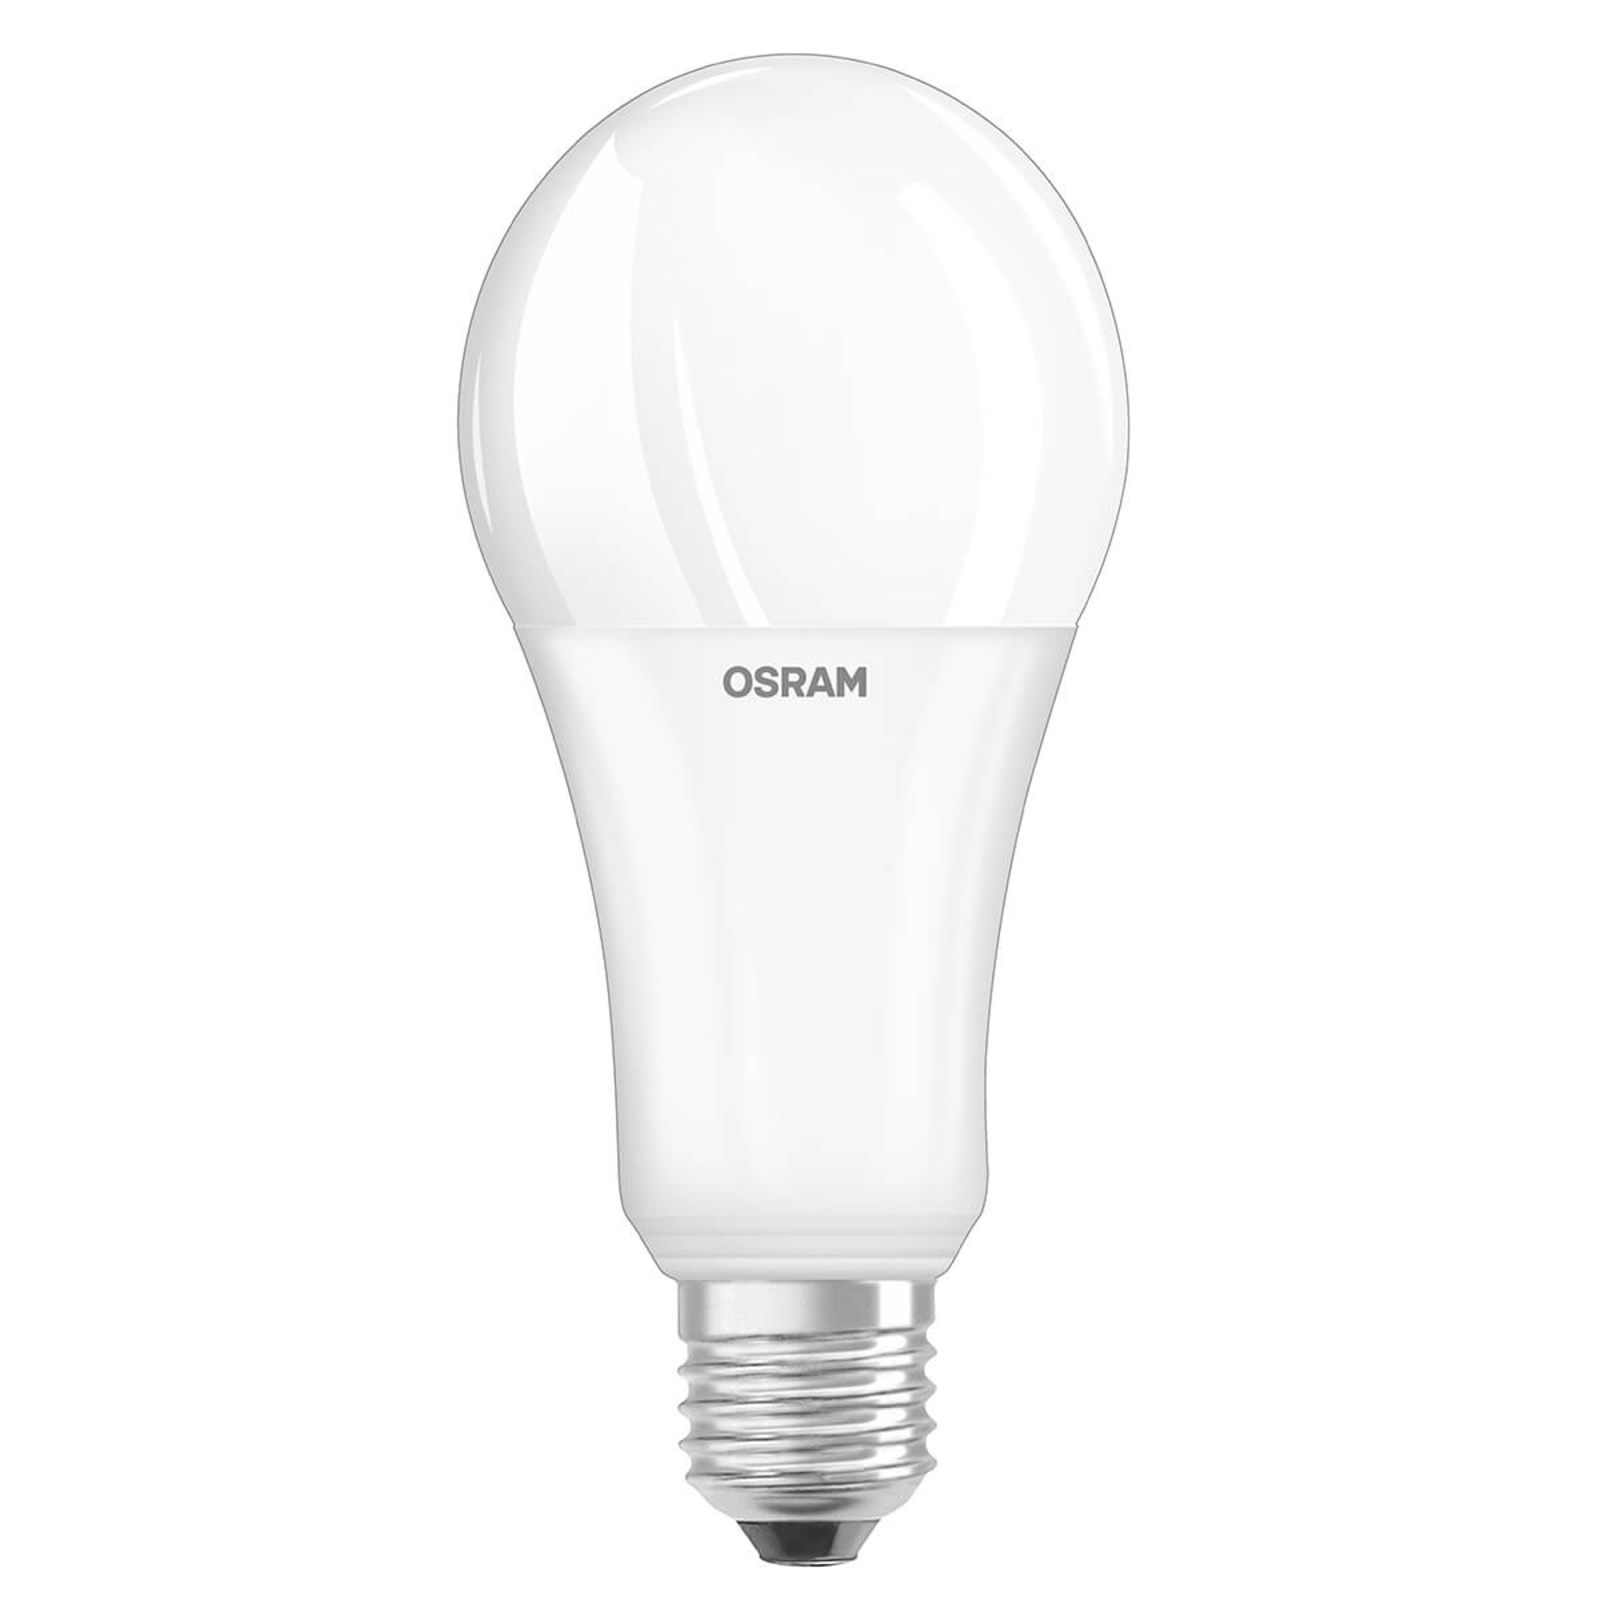 OSRAM LED bulb E27 19 W 2,700 K, 2,452 lm matt